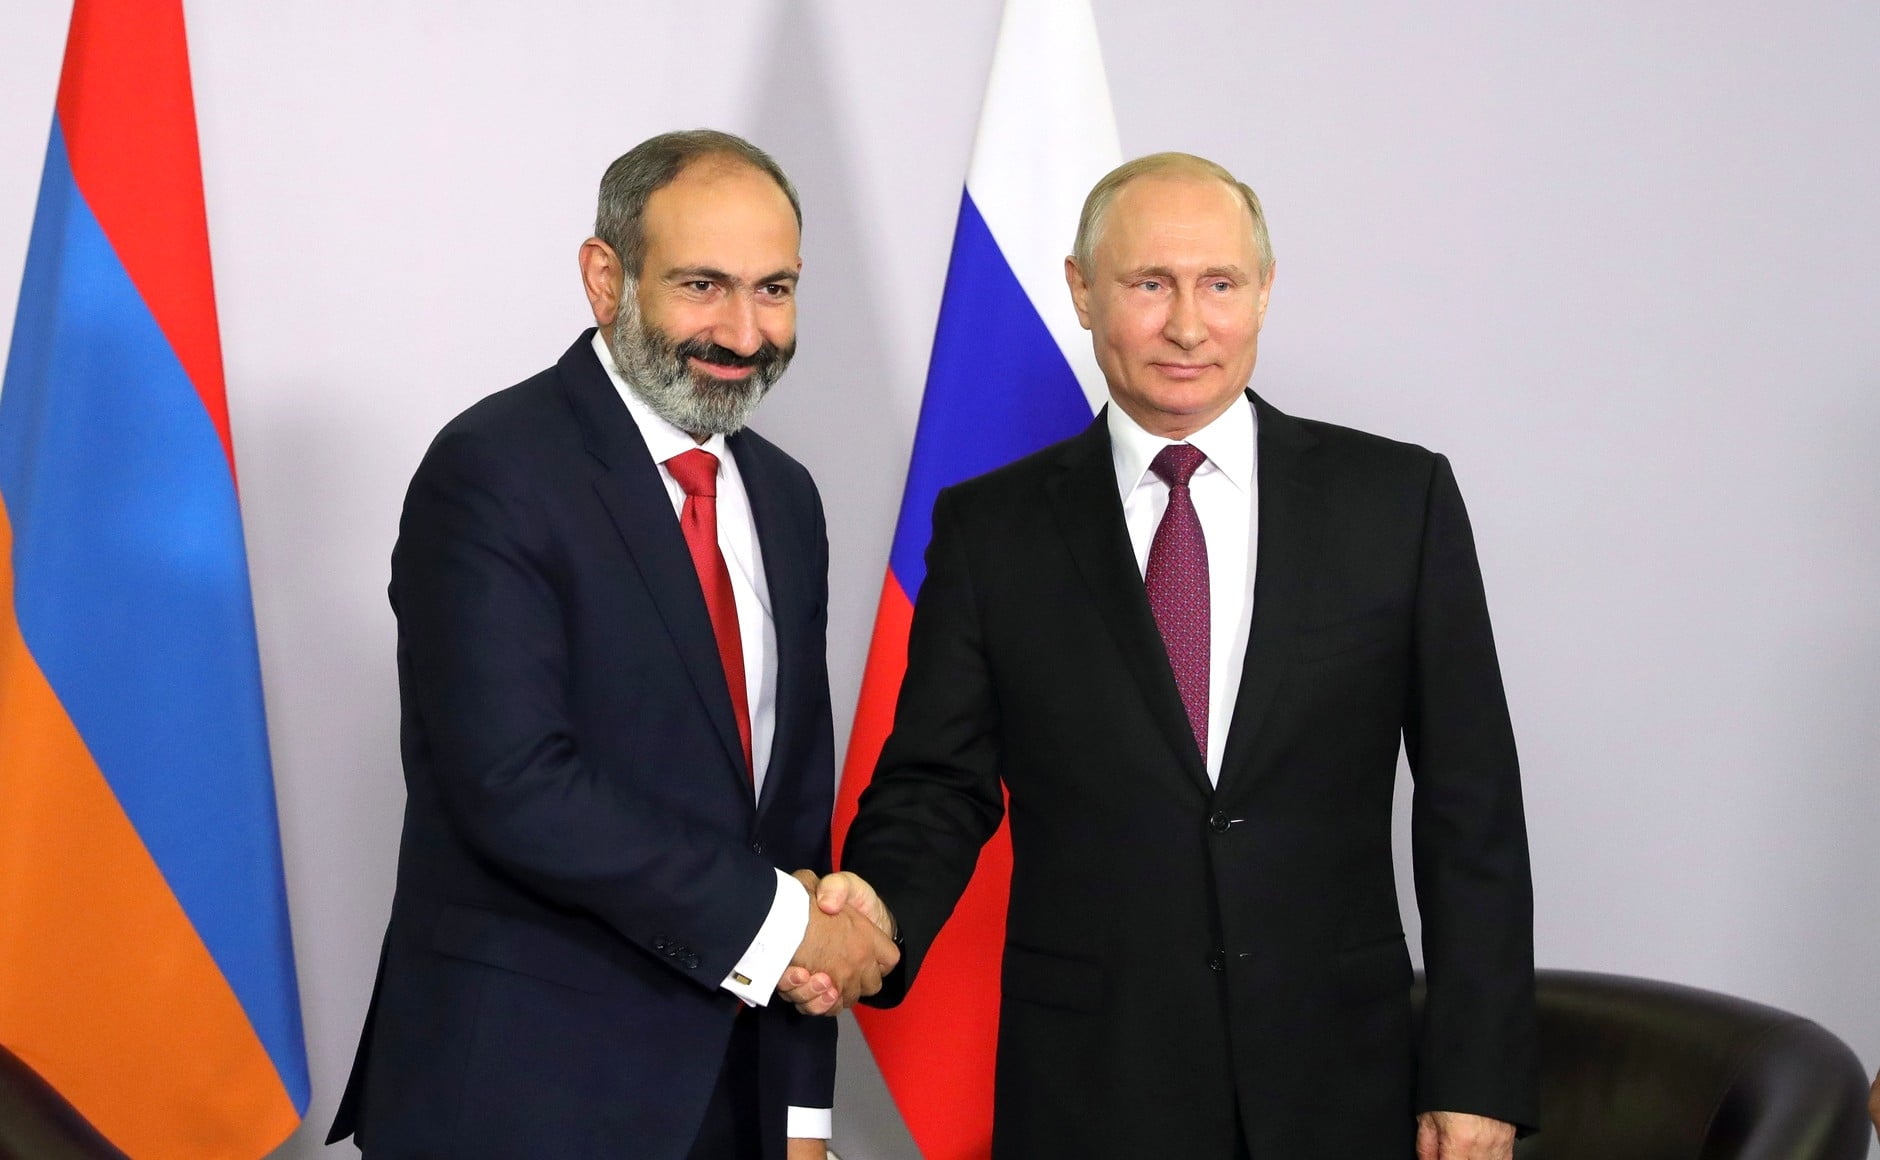 Αρμενία: Συνάντηση Πούτιν-Πασινιάν για την κατάσταση στα σύνορα με το Αζερμπαϊτζάν!